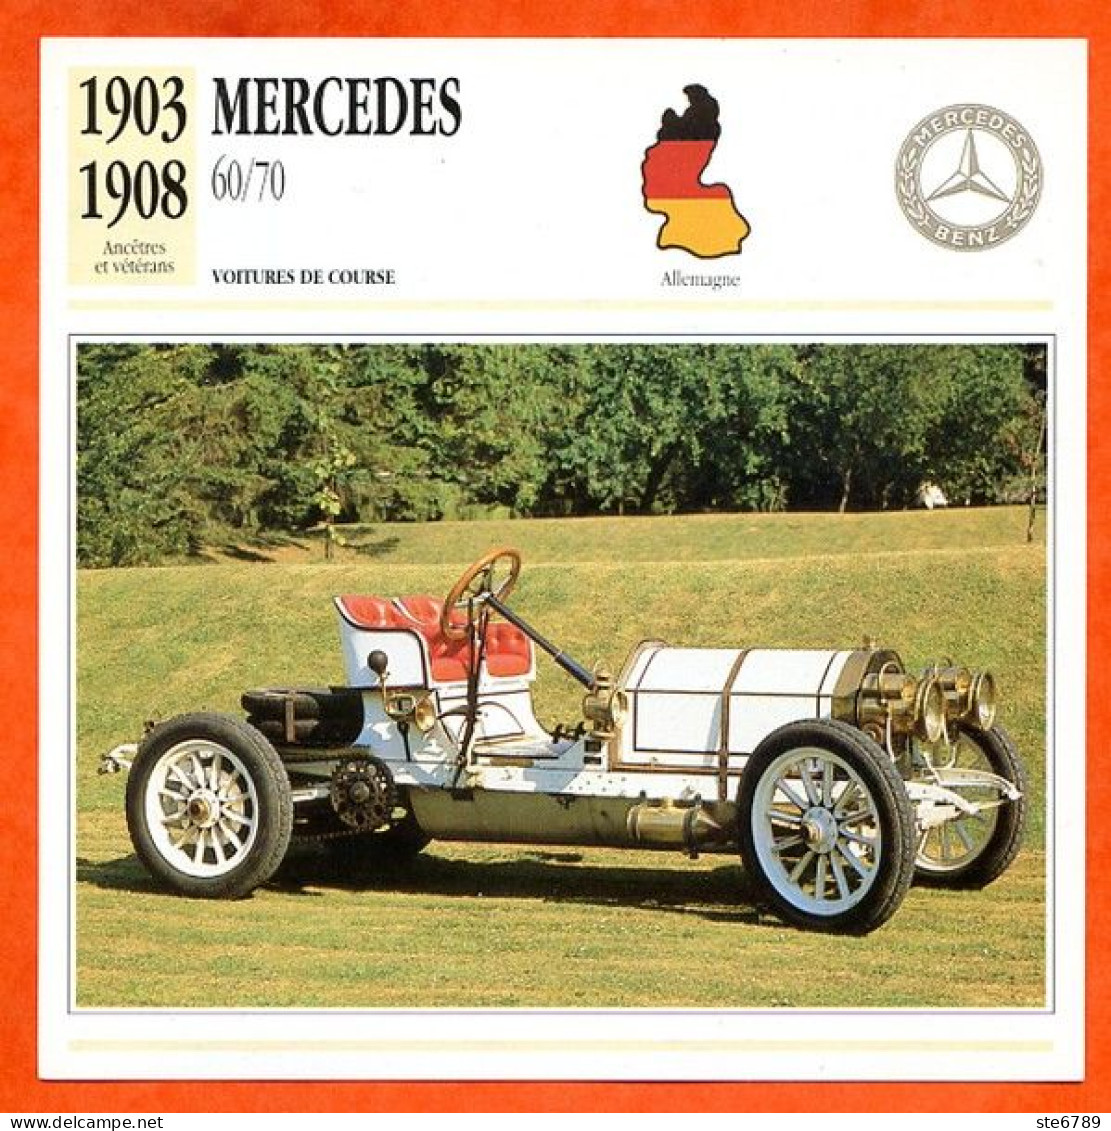 MERCEDES 60/70 1903 Voiture De Course Allemagne Fiche Technique Automobile - Cars